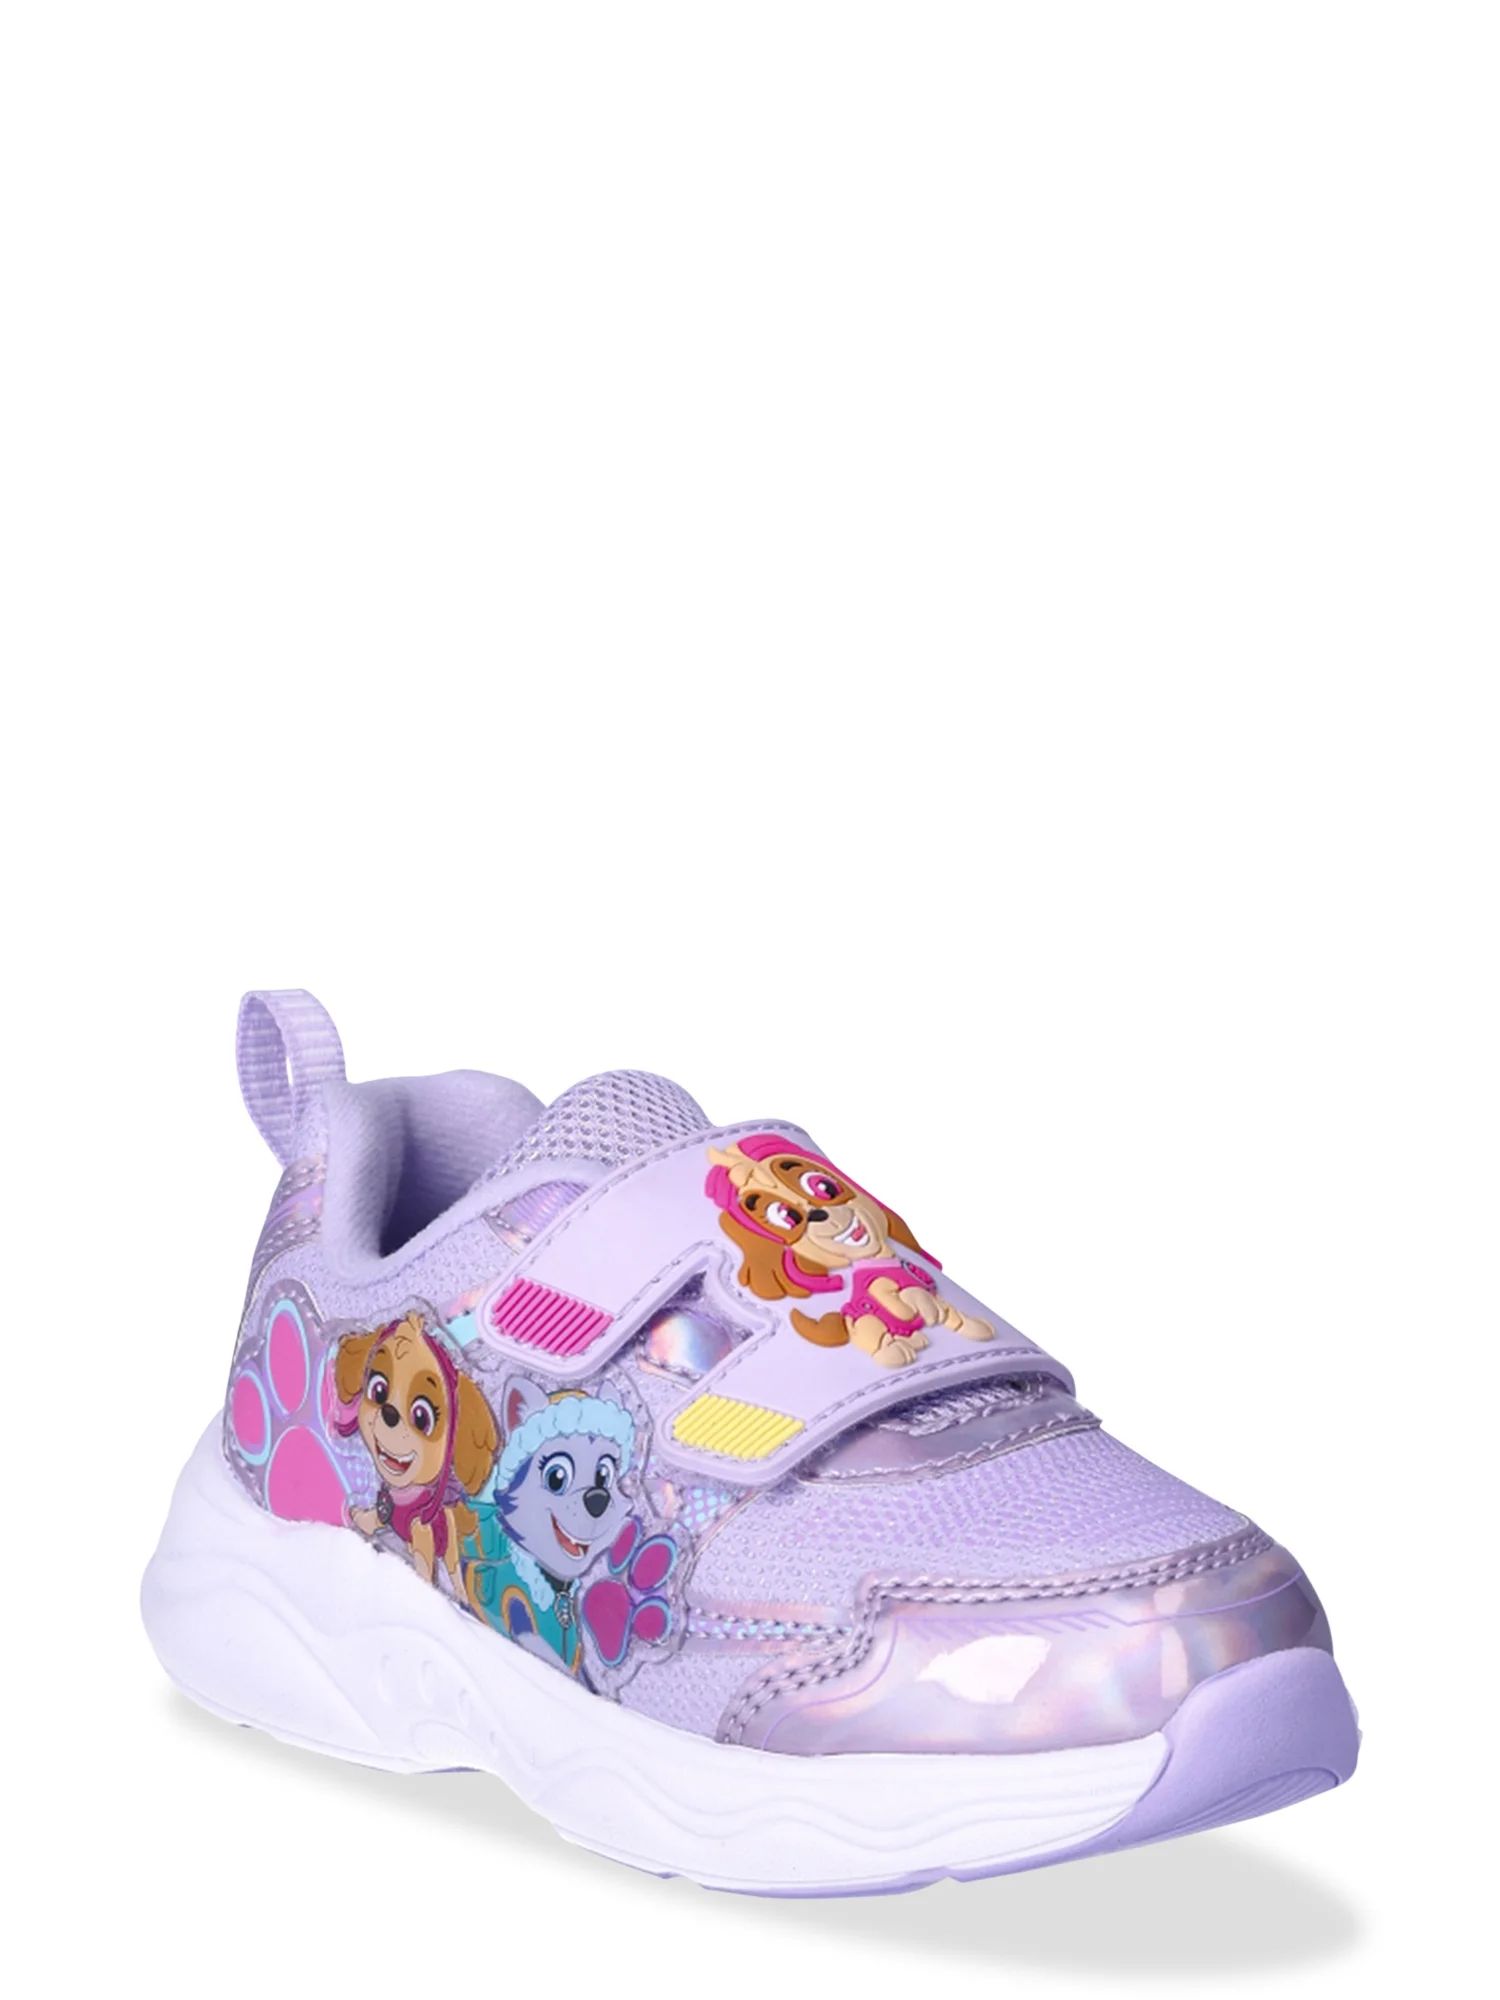 Paw Patrol Toddler Girls Athletic Sneakers, Sizes 6-11 | Walmart (US)